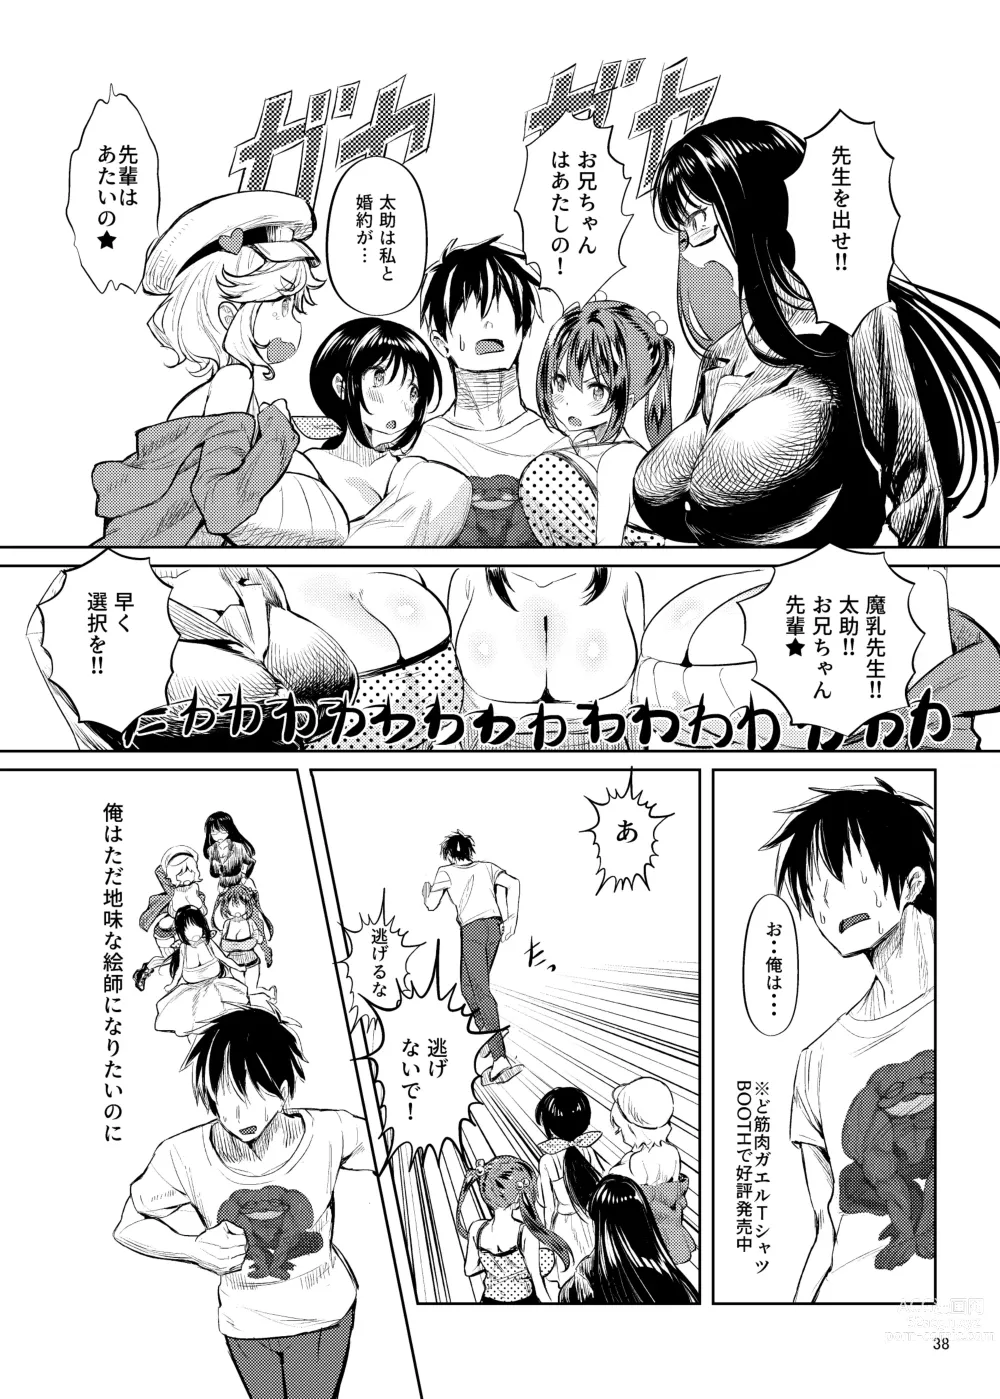 Page 39 of doujinshi Iroiro jijou ga attaga kekka to shite ore no bakunyuu osananajimi ga do inran ni natte ita.